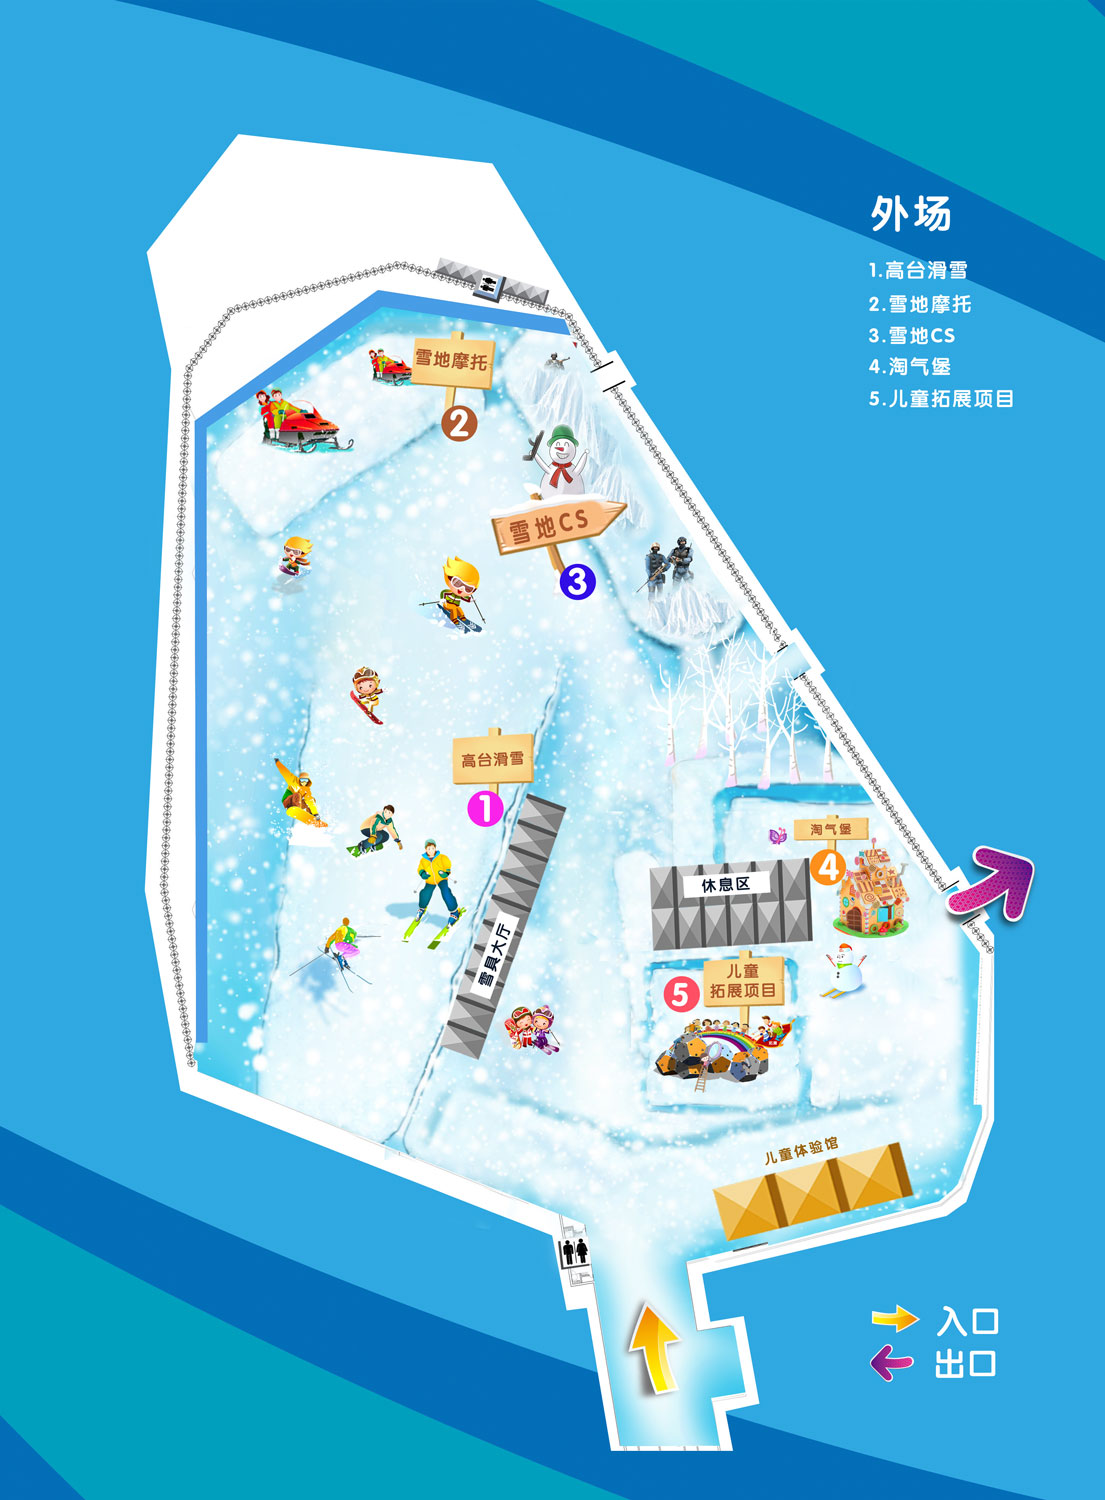 北京鸟巢场馆冰雪承建 - 冰雪承建 - 冰雪节,冰雪展,冰雕节,冰雕展--无锡市冰雪奇缘文化传媒有限公司